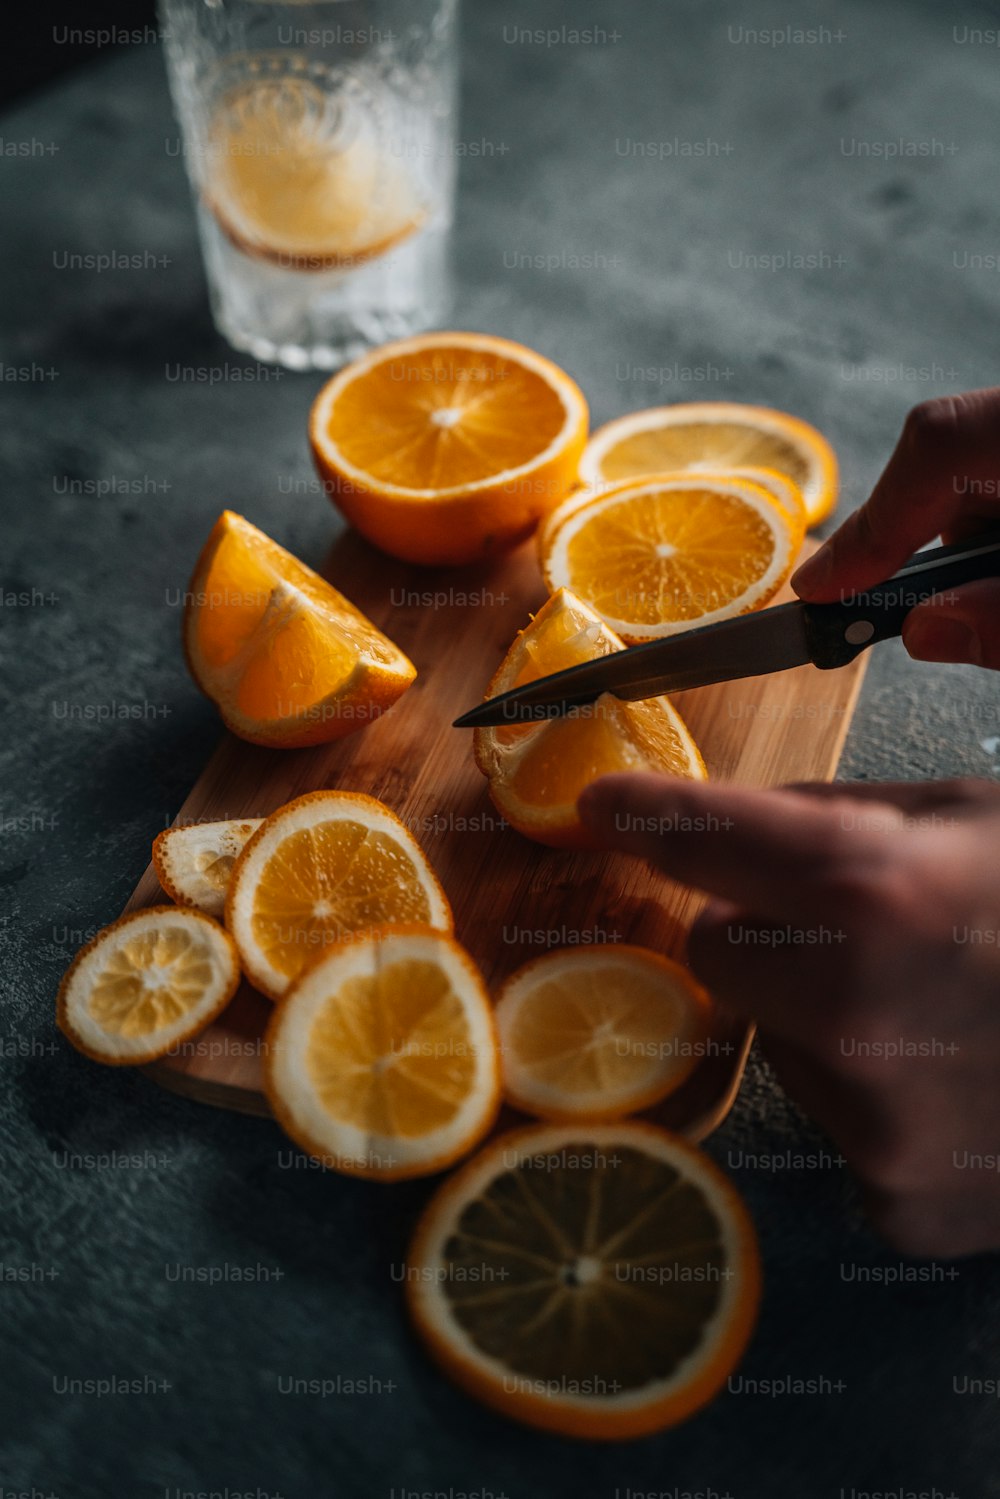 Una persona cortando naranjas en una tabla de cortar